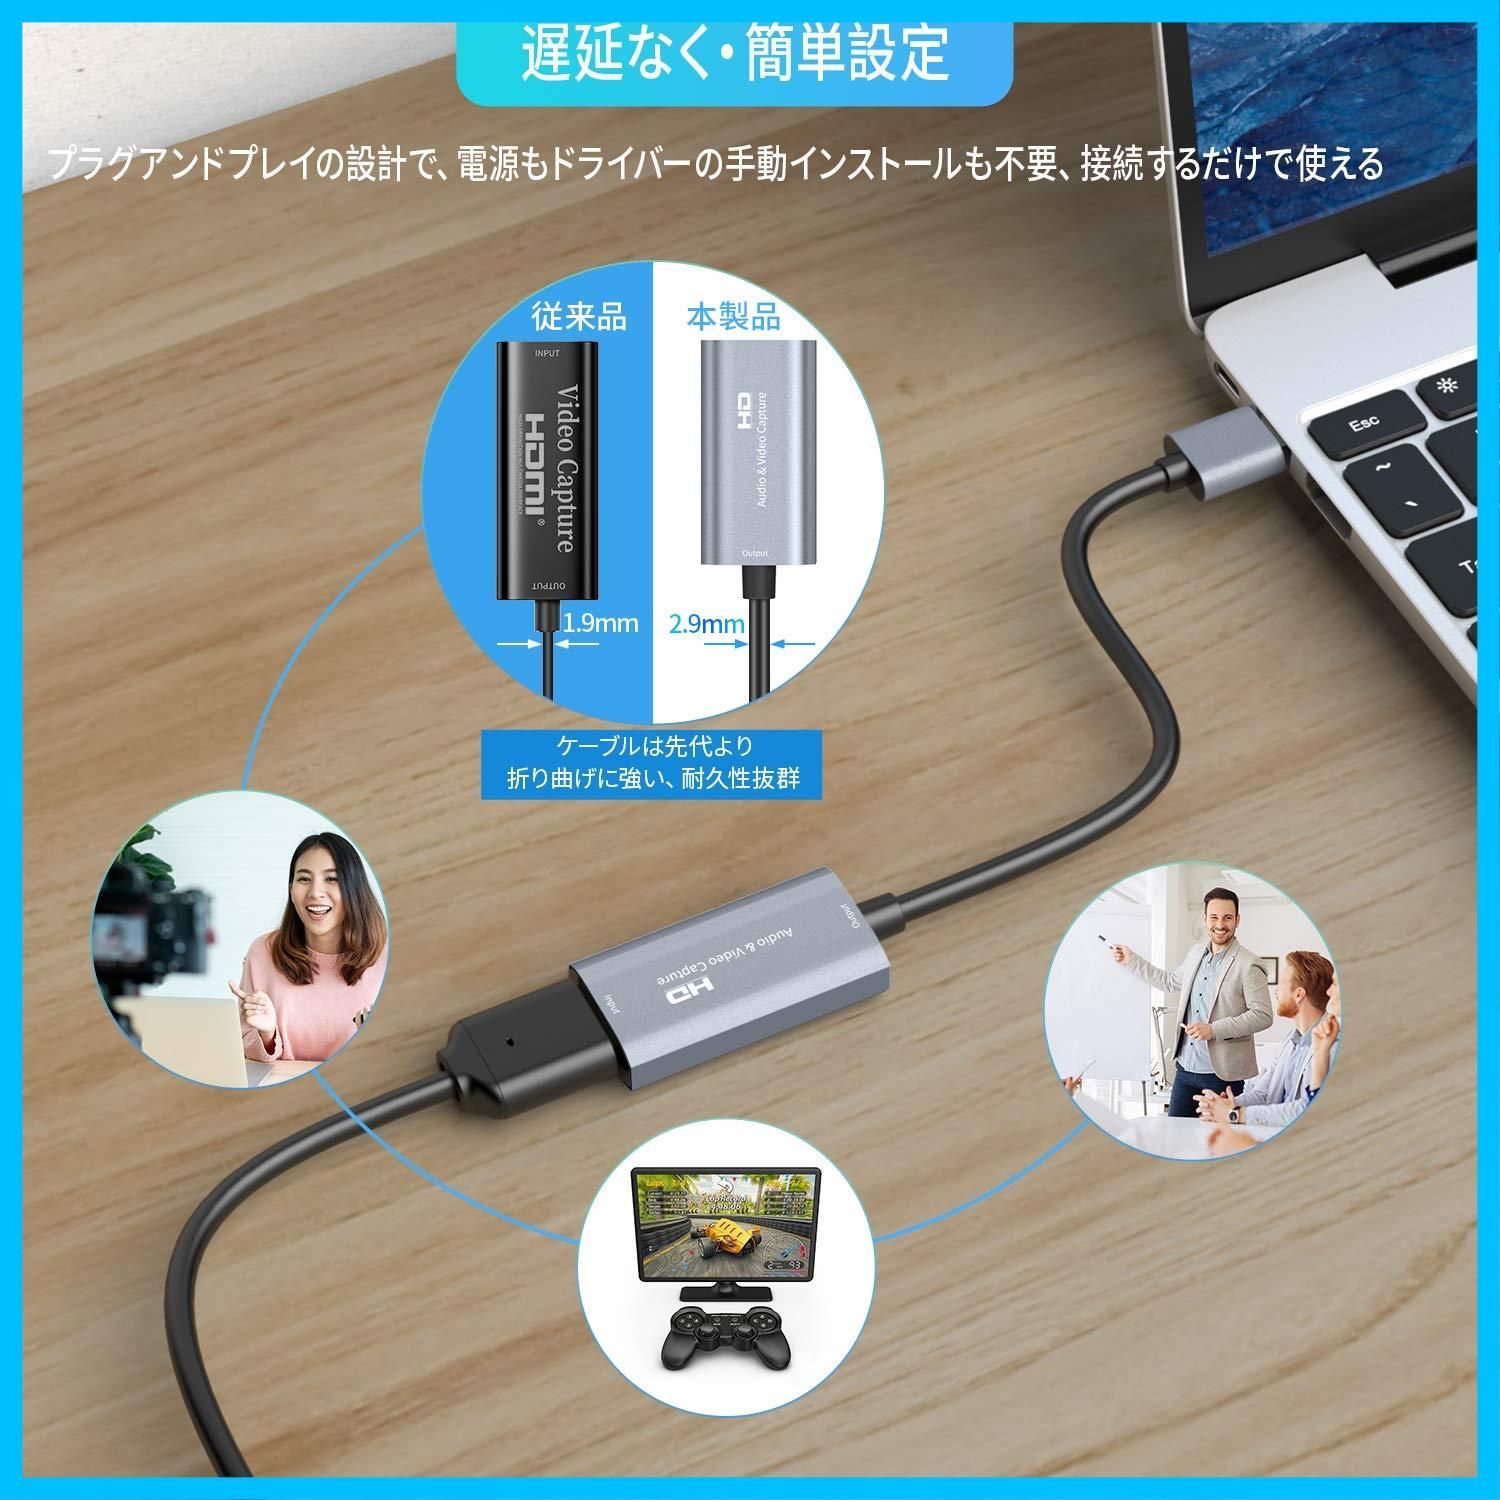 2021放熱 Chilison HDMI キャプチャーボード ゲームキャプチャー USB3.0 ビデオキャプチャカード 1080P60Hz ゲーム実況生配信、画面共有、録画、ライブ会議に適用  小型軽量 Nintendo Switch、PS5、OBS Studi - メルカリ